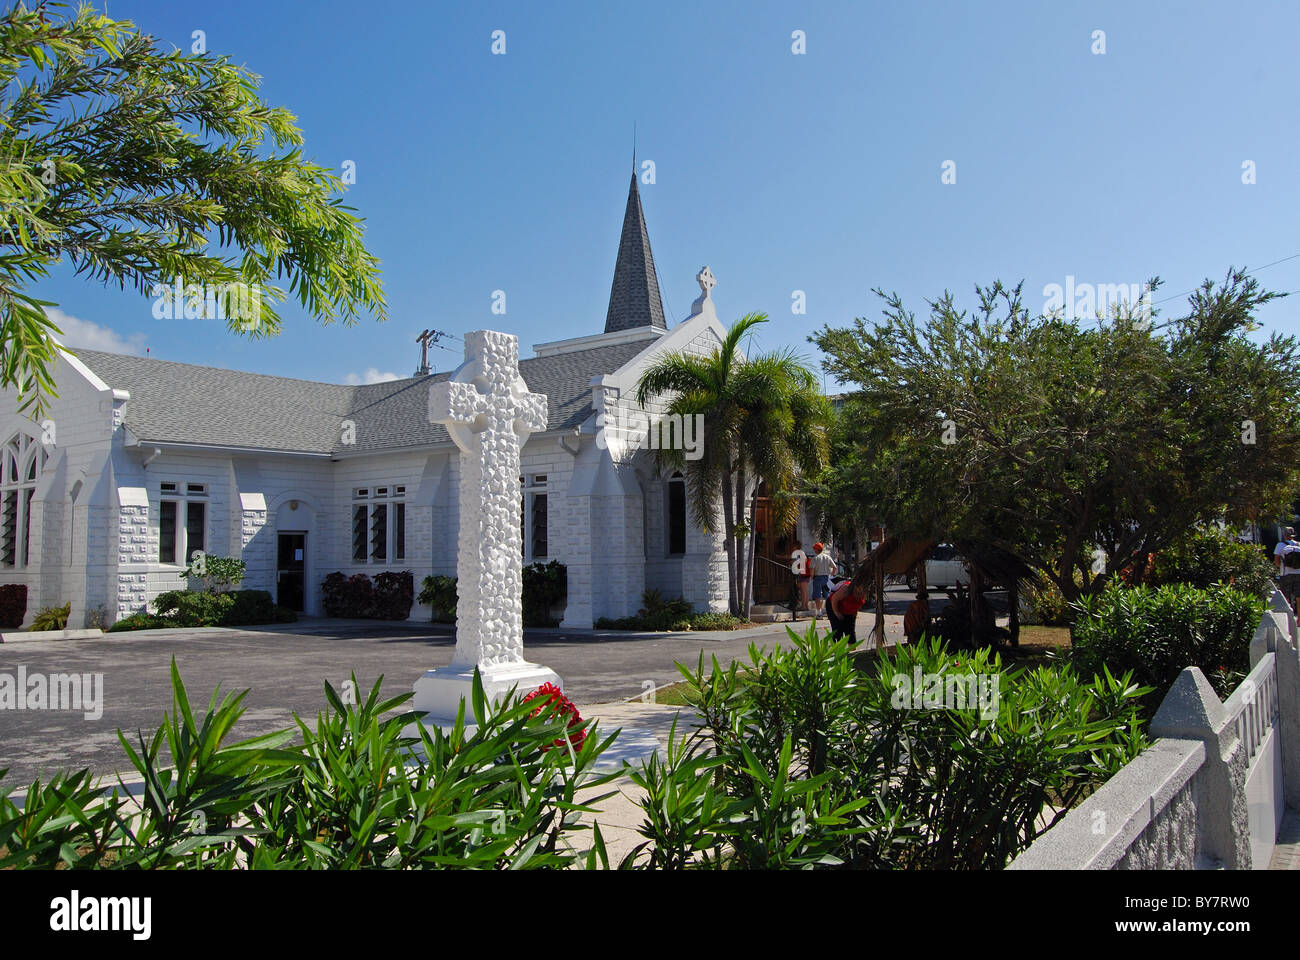 Elmslie Memorial United Church avec une croix de pierre au premier plan, George Town, Grand Cayman, Cayman Islands, Caribbean. Banque D'Images